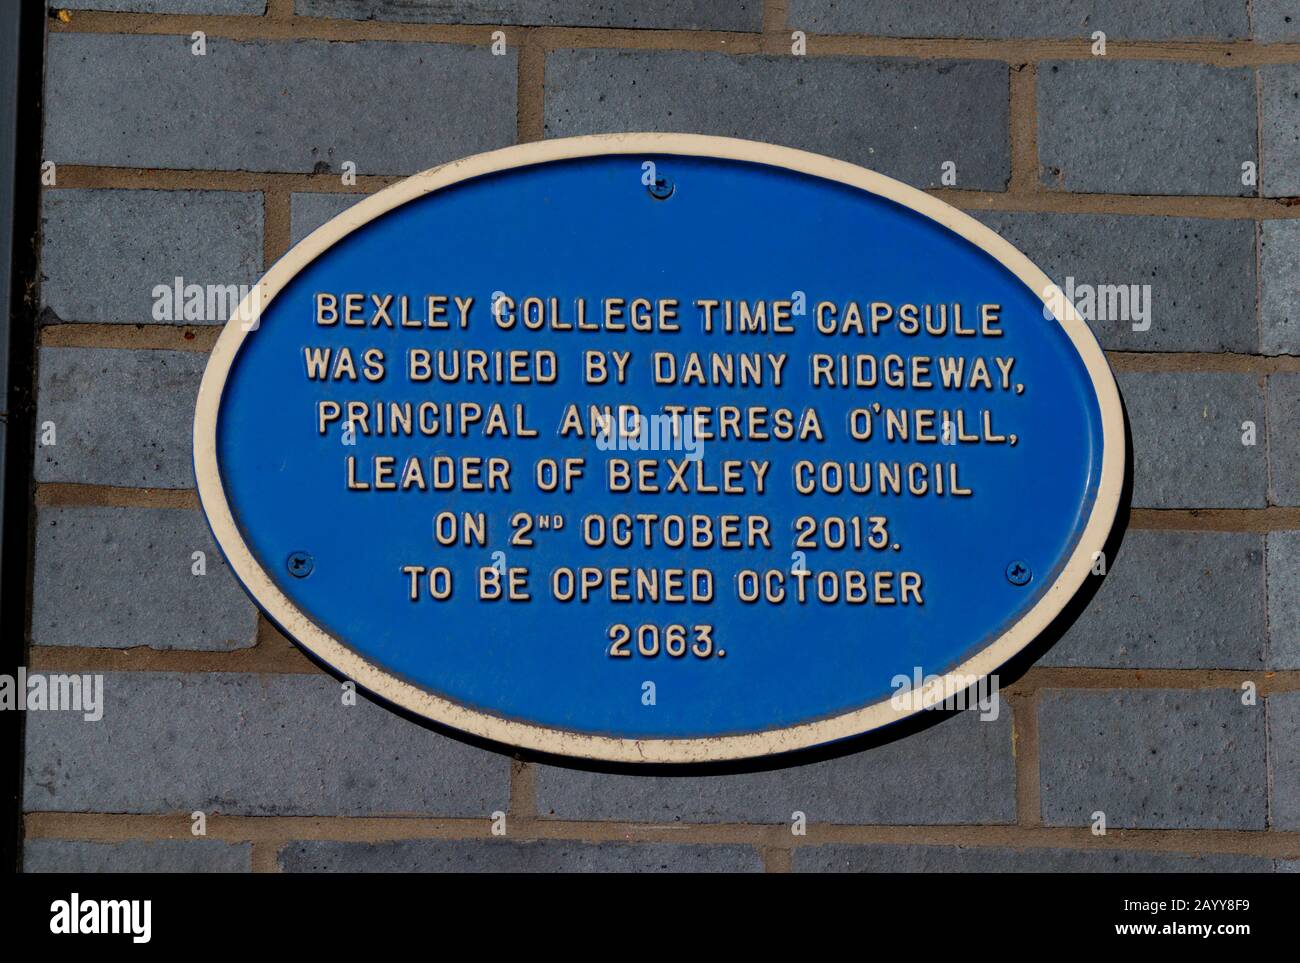 Bexley, London, Großbritannien - 8. Februar 2020: Beschilderung außerhalb des Bexley College mit Details zur Bestattung der Zeitkapsel. Stockfoto